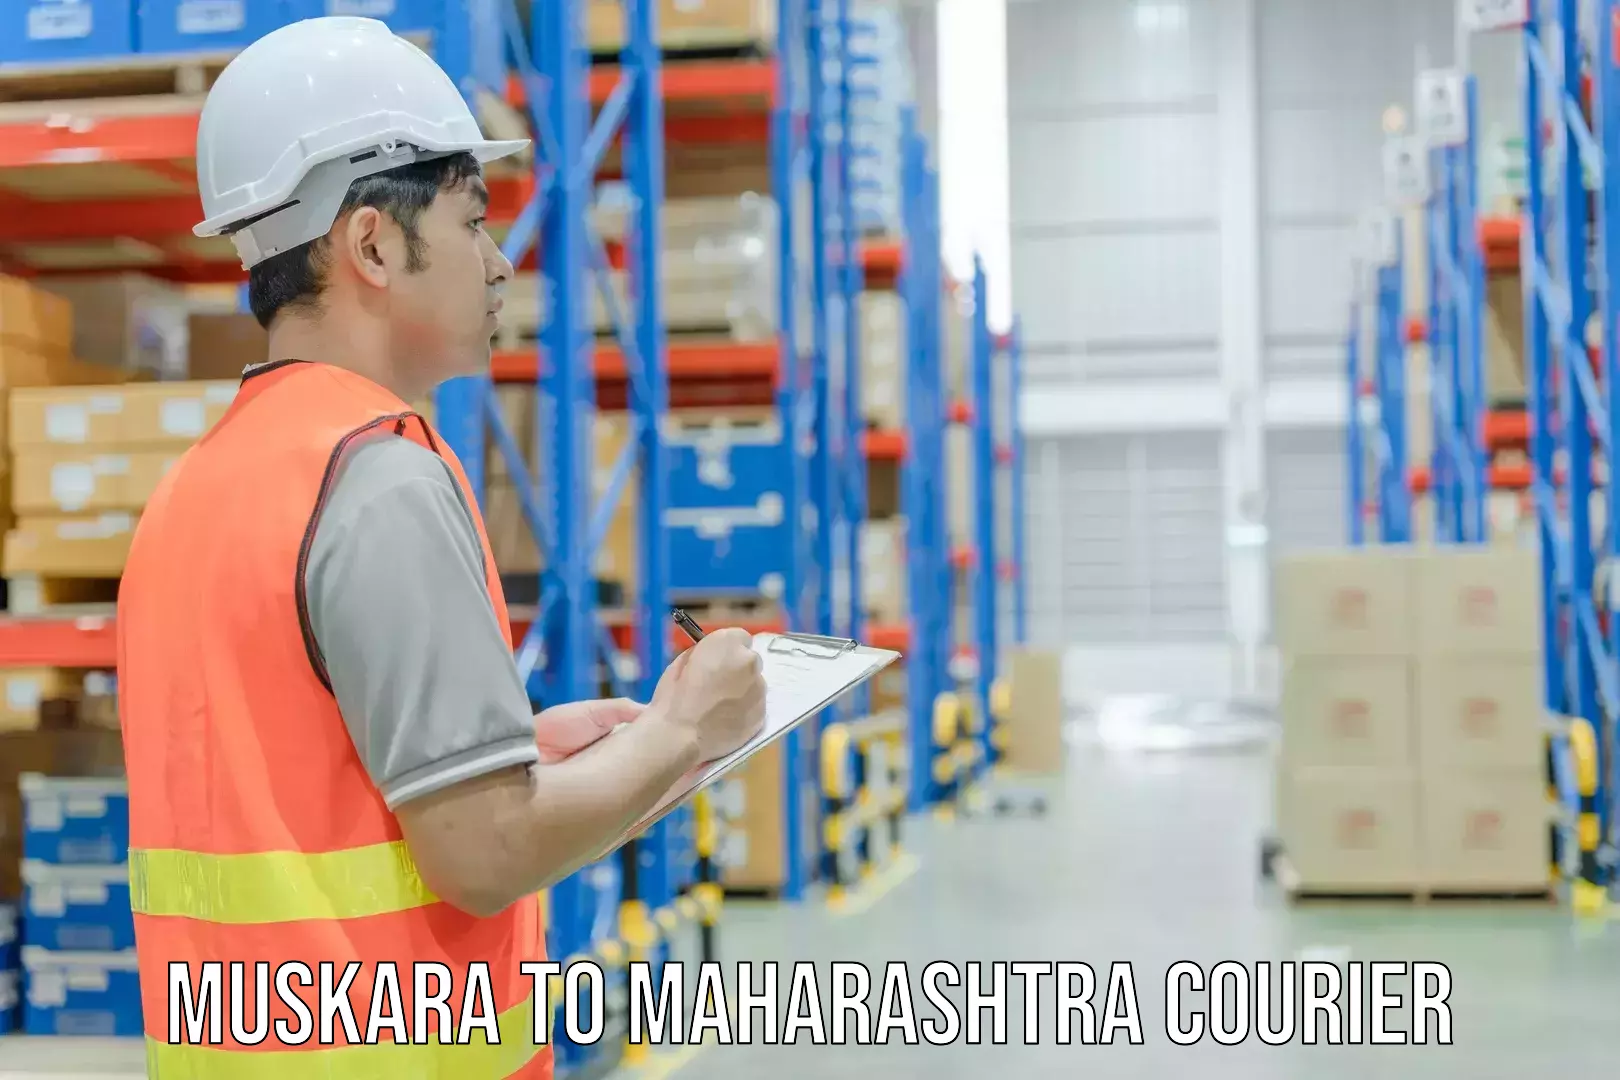 Multi-city courier Muskara to Maharashtra